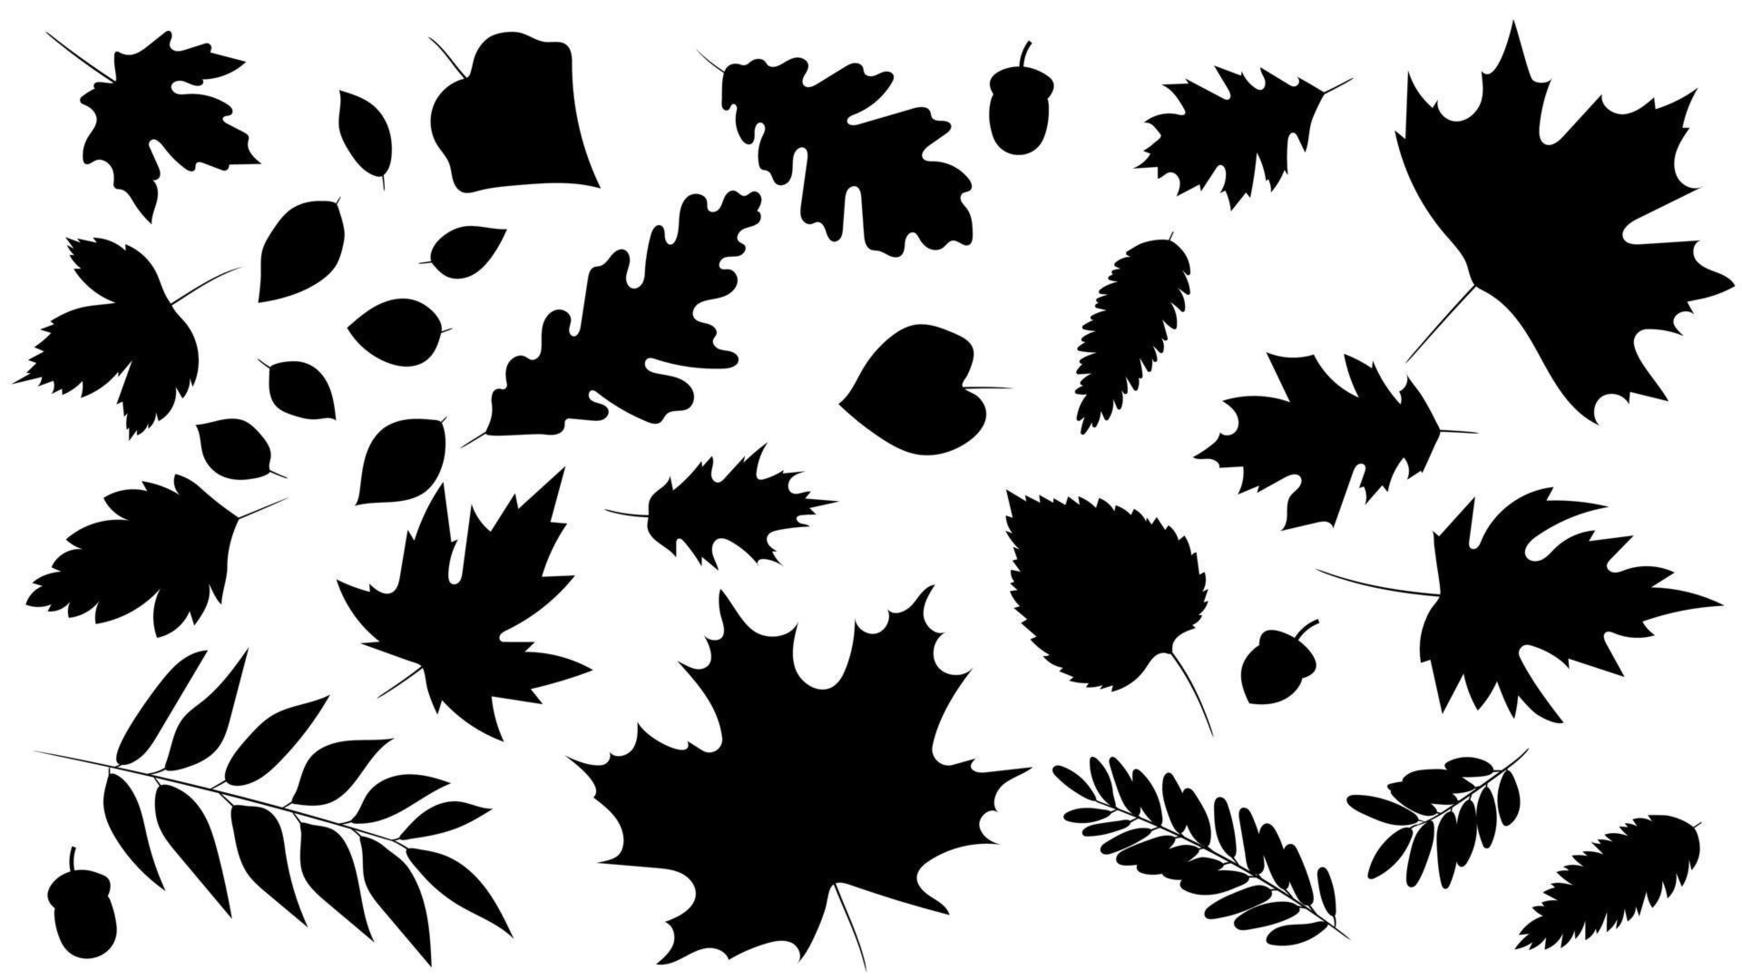 grande conjunto de folhas de diferentes tipos de árvores isoladas. conjunto de carvalho de folha de outono preto, bordo, rowan e bolotas. estilo de silhueta realista. ilustração vetorial. conjunto de folhagem. vetor